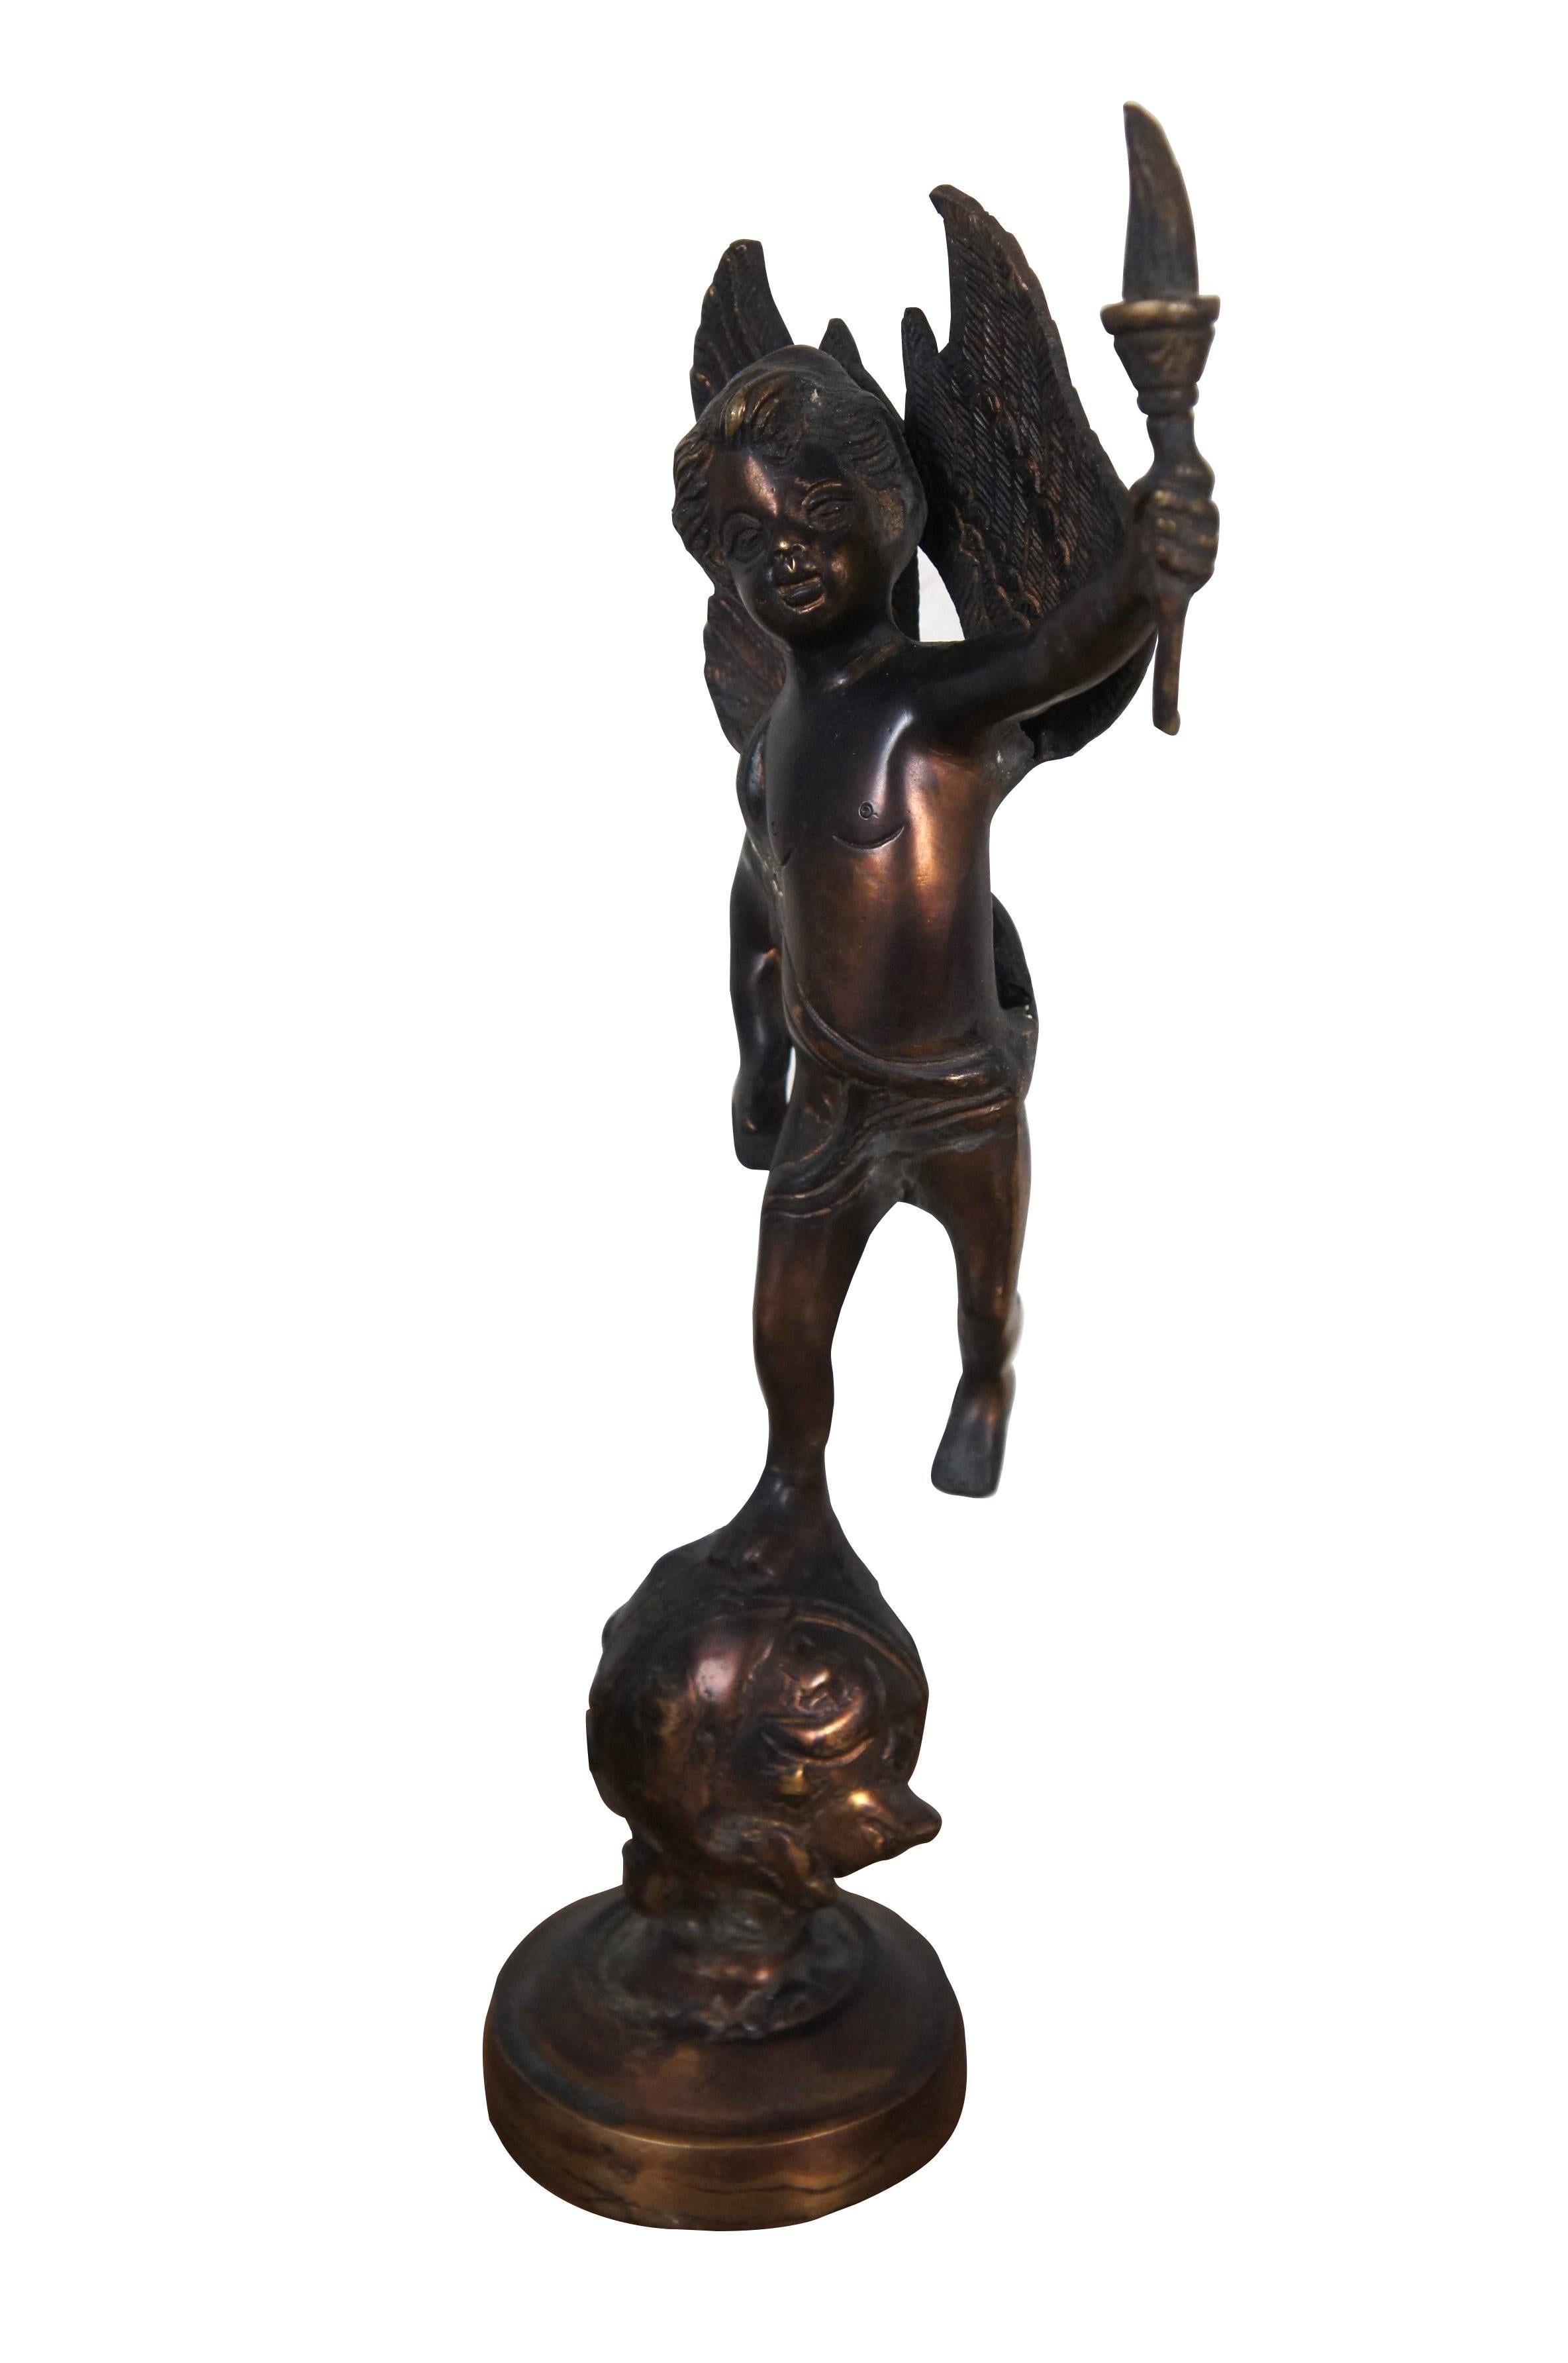 Sculpture / figurine vintage en bronze moulé en forme de putto / chérubin / ange portant une torche, perché au sommet d'un globe constellé d'étoiles.

